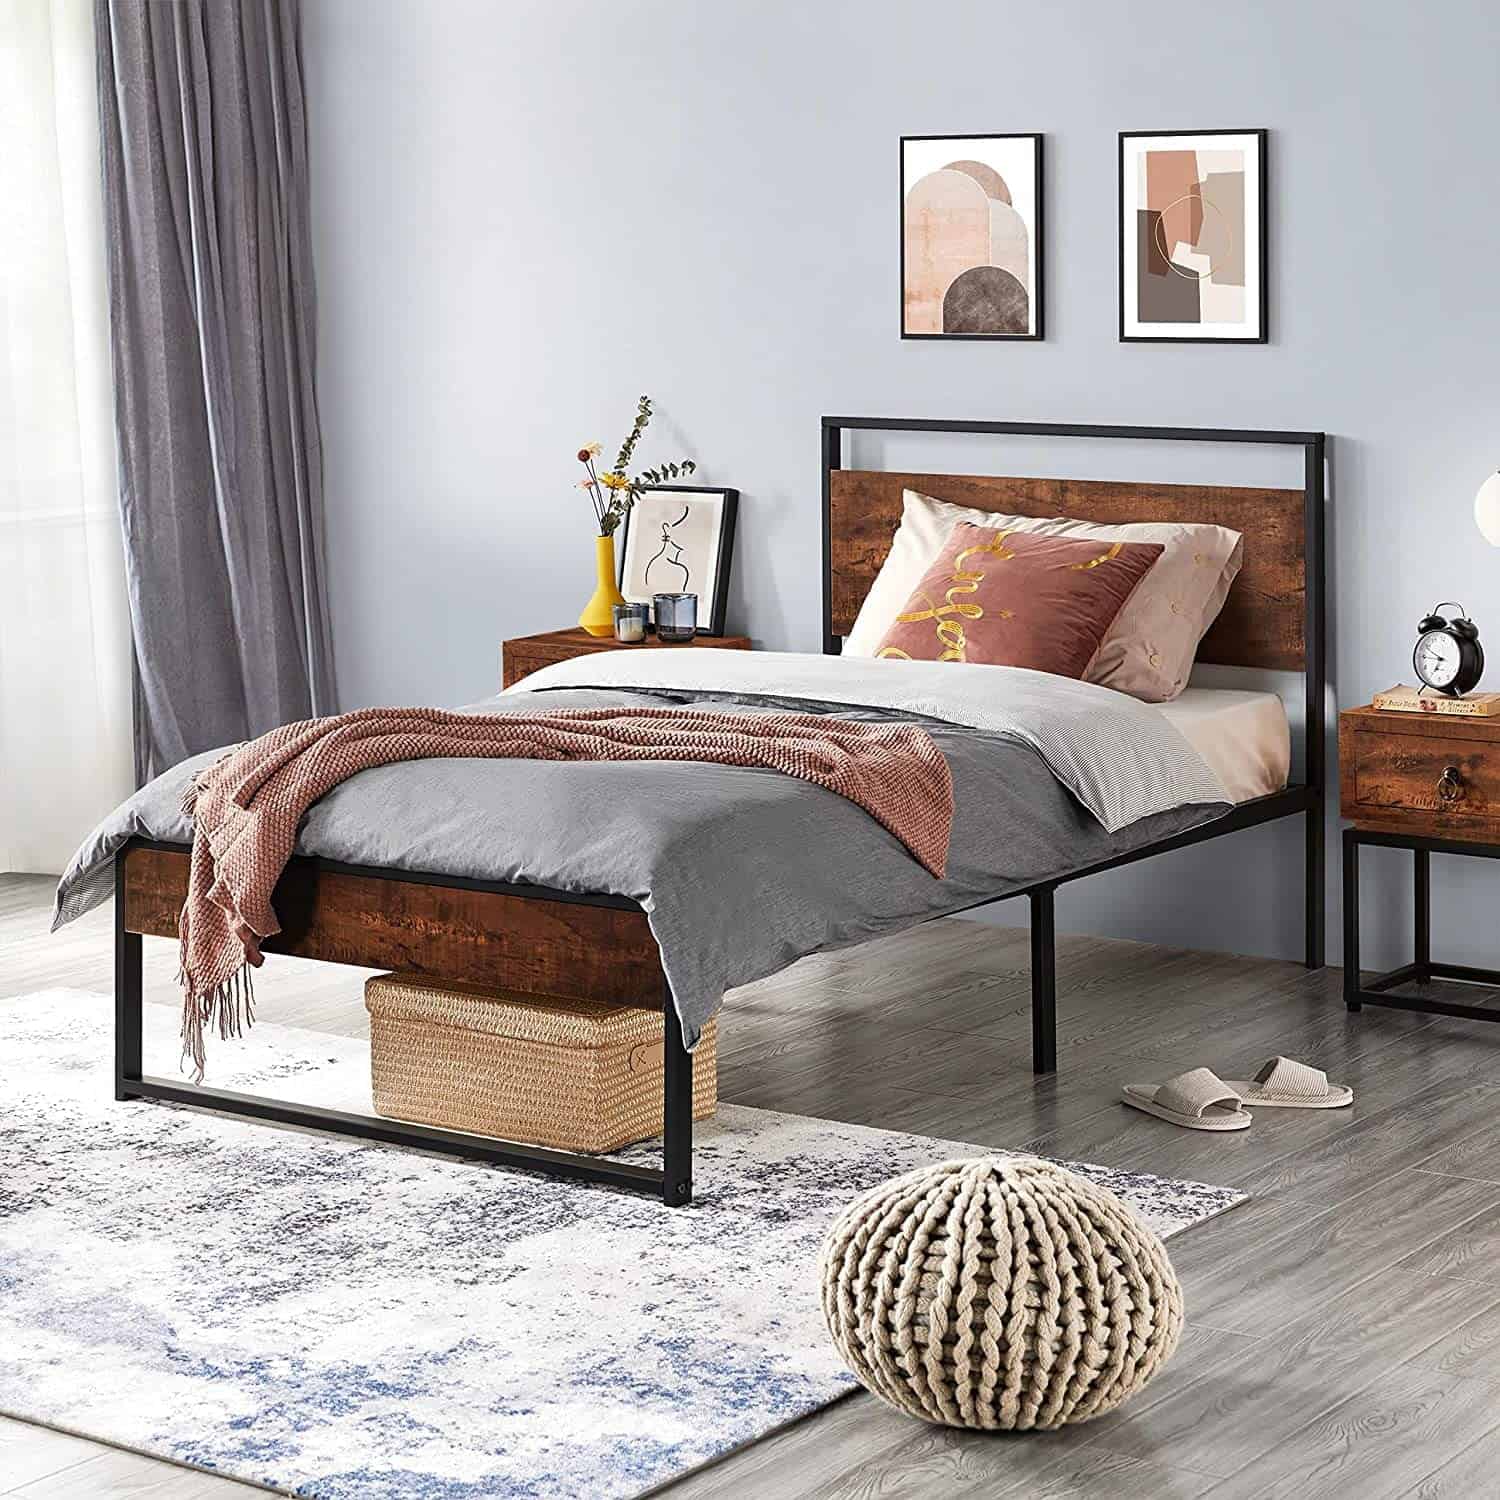 Mẫu giường sắt kết hợp gỗ 